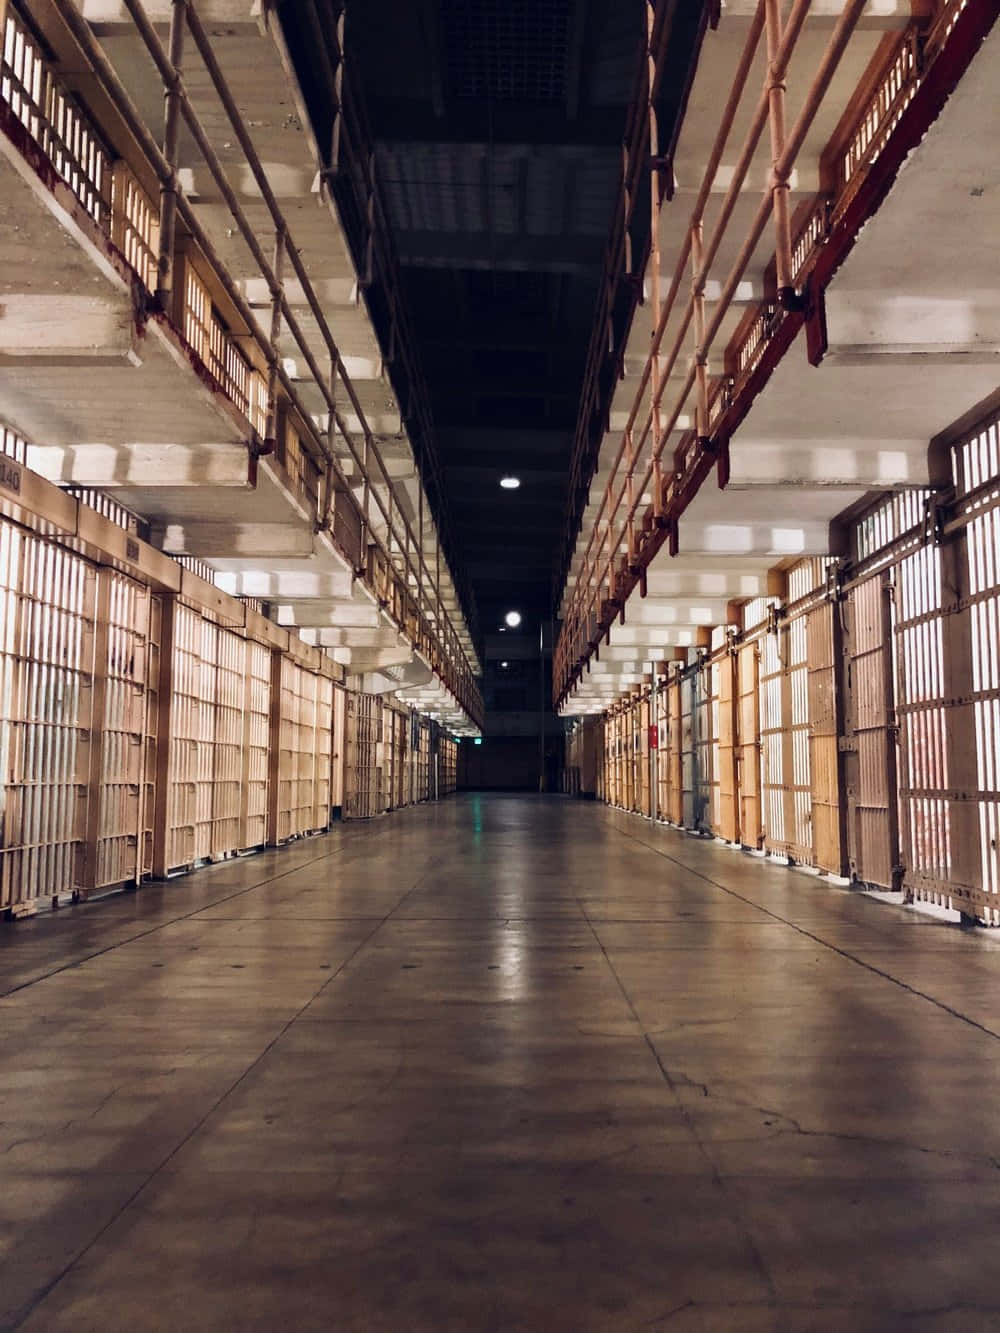 Life Behind Bars - Prison Walls